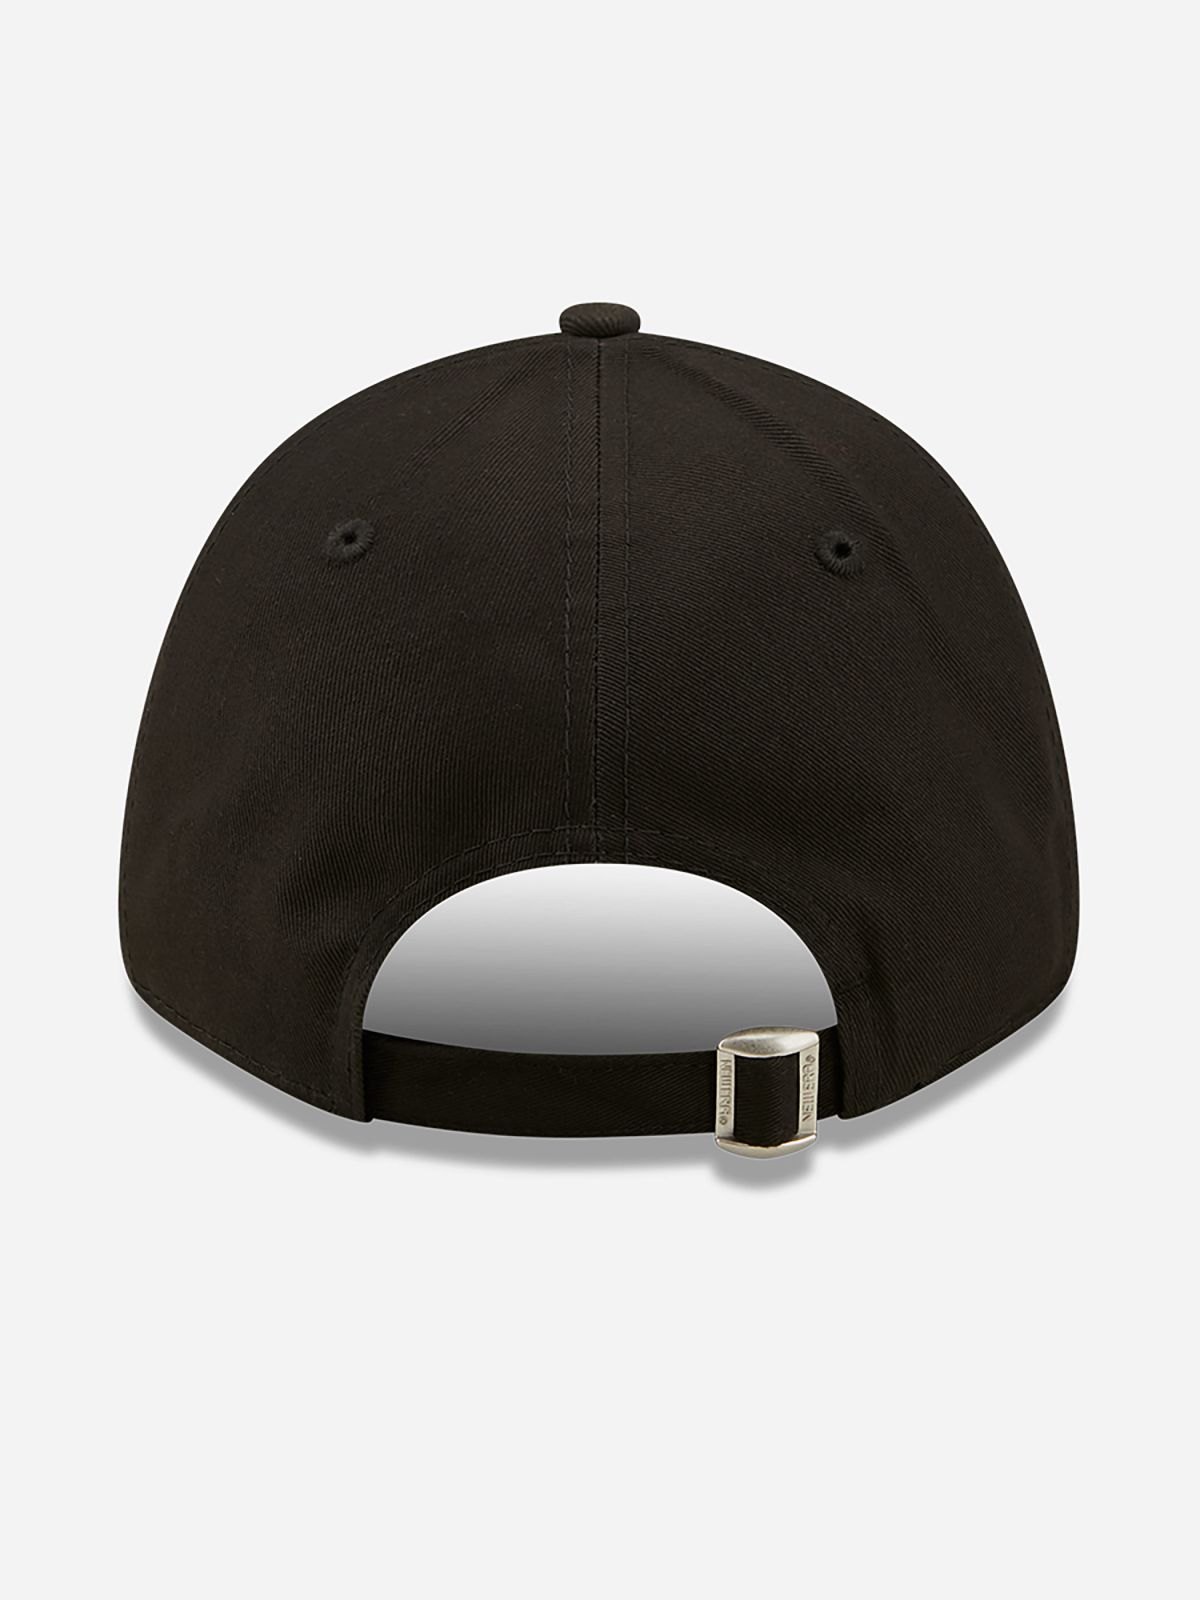  כובע מצחייה עם הדפס LA רקום / גברים של NEW ERA